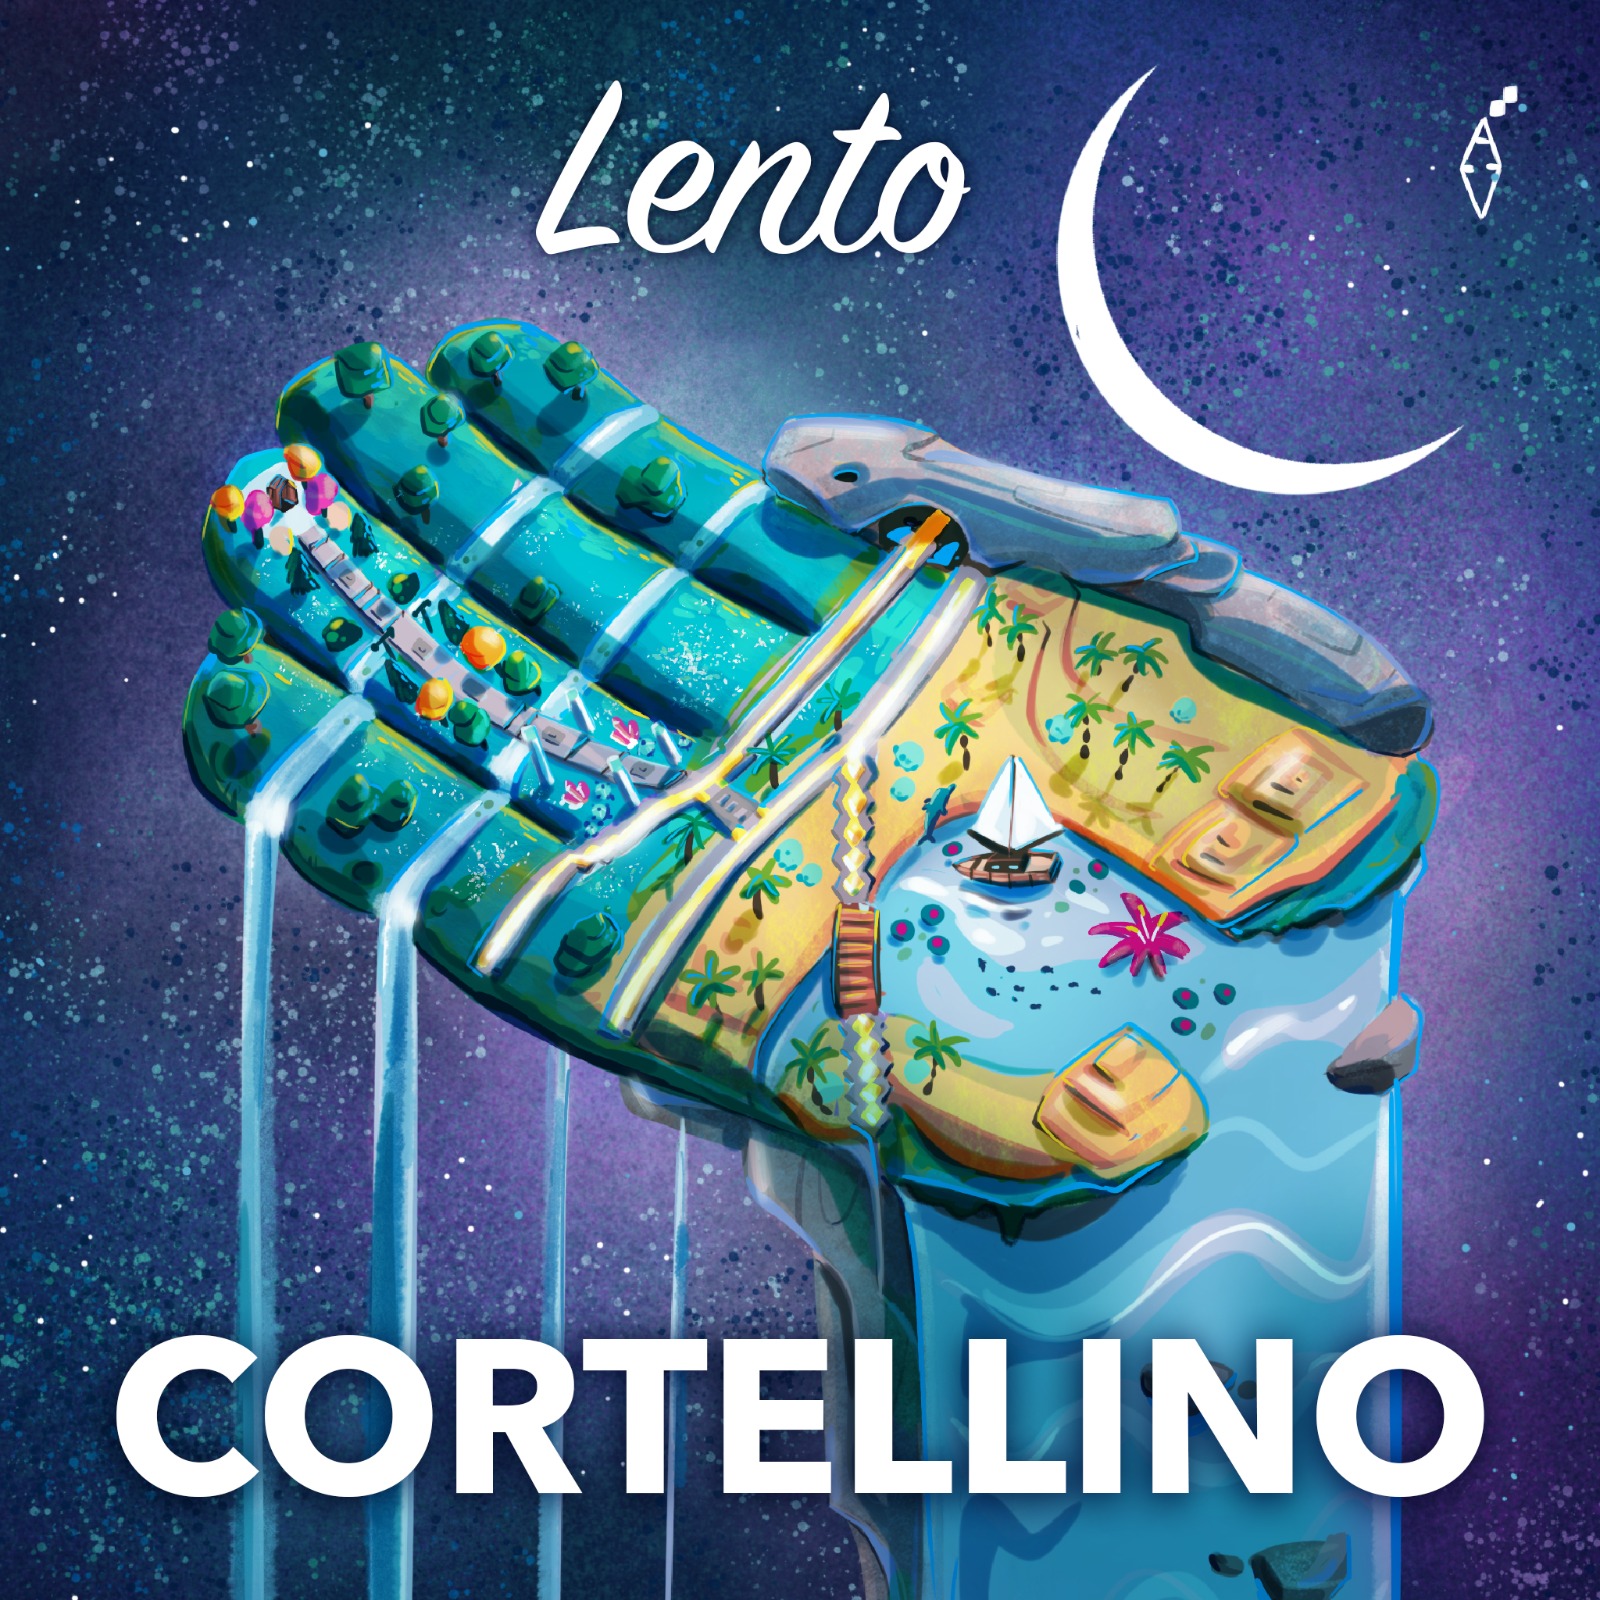 Cortellino presenta il singolo “Lento”